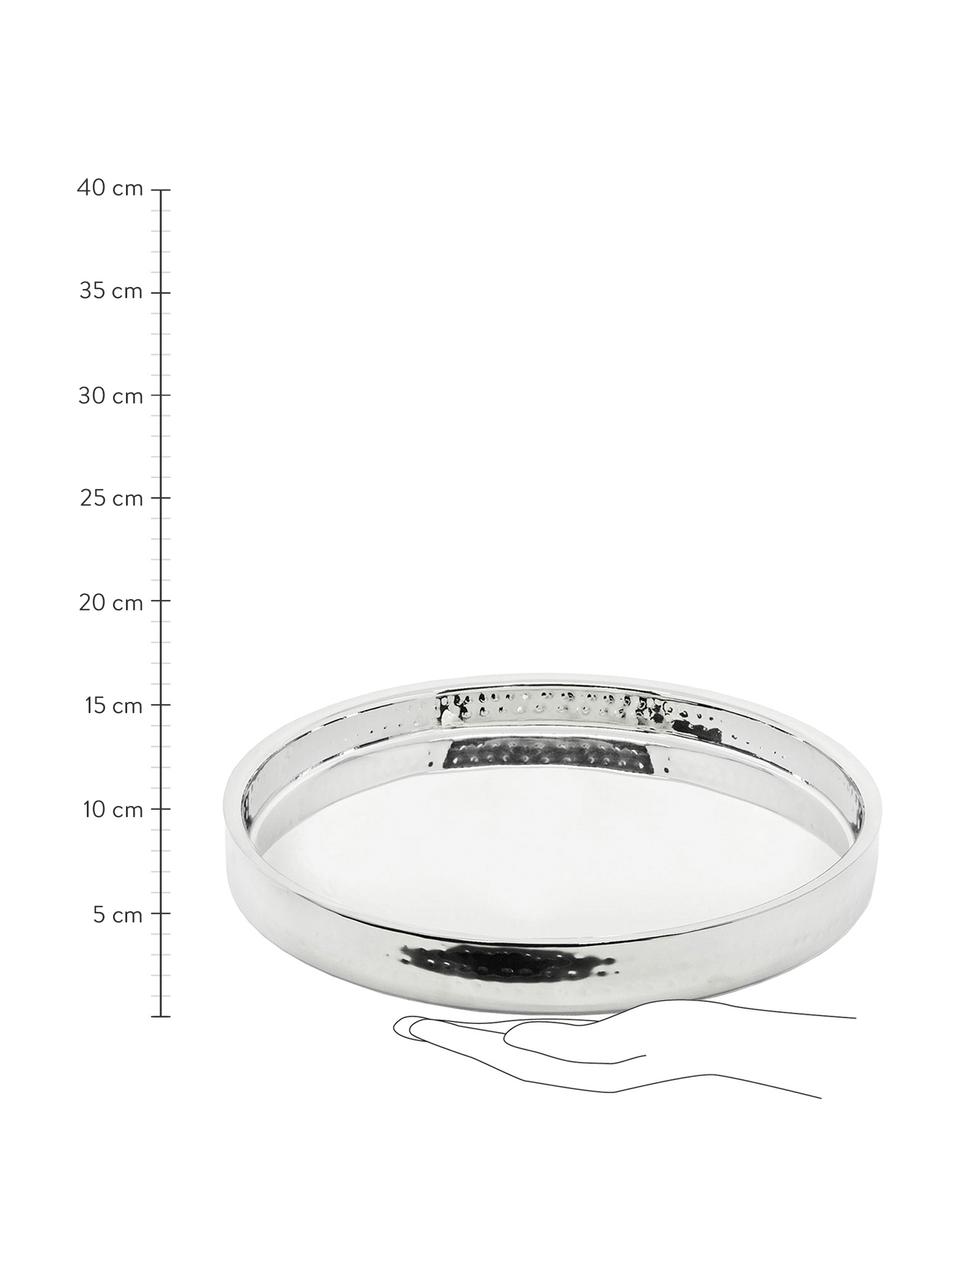 Rundes Spiegeltablett Alaska in Silber, Ø 32 cm, Edelstahl, gehämmert
Pflegehinweise  Von Hand spülen, Edelstahl, Ø 32 cm